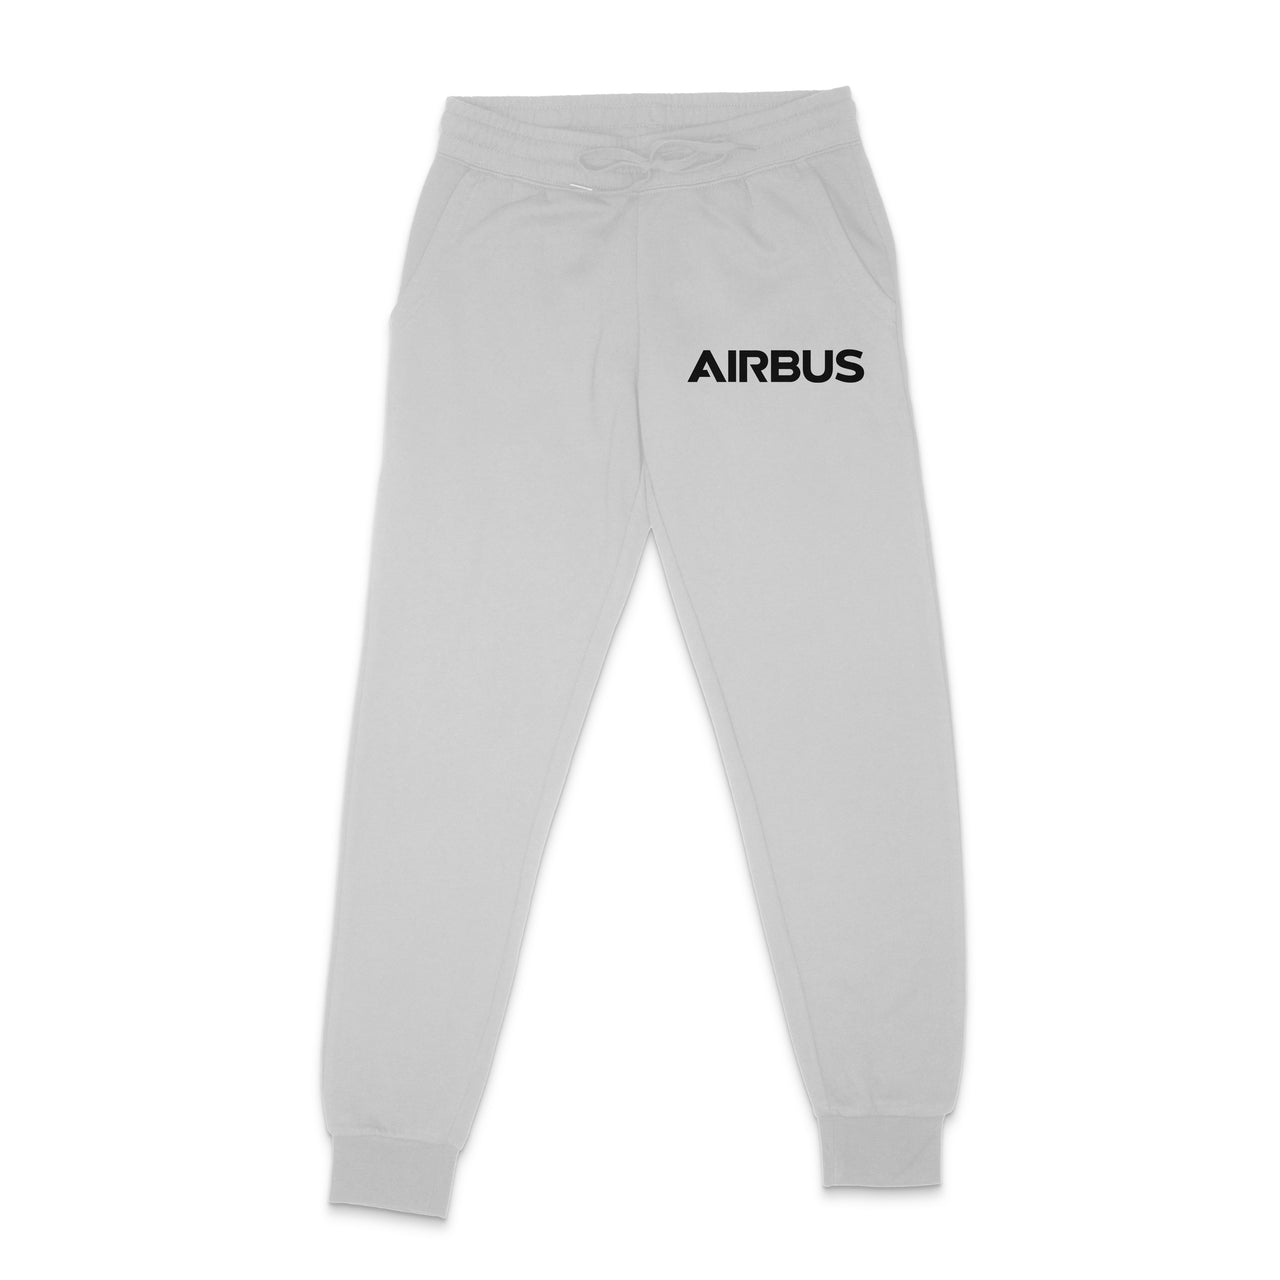 Airbus & Text Designed Sweatpants